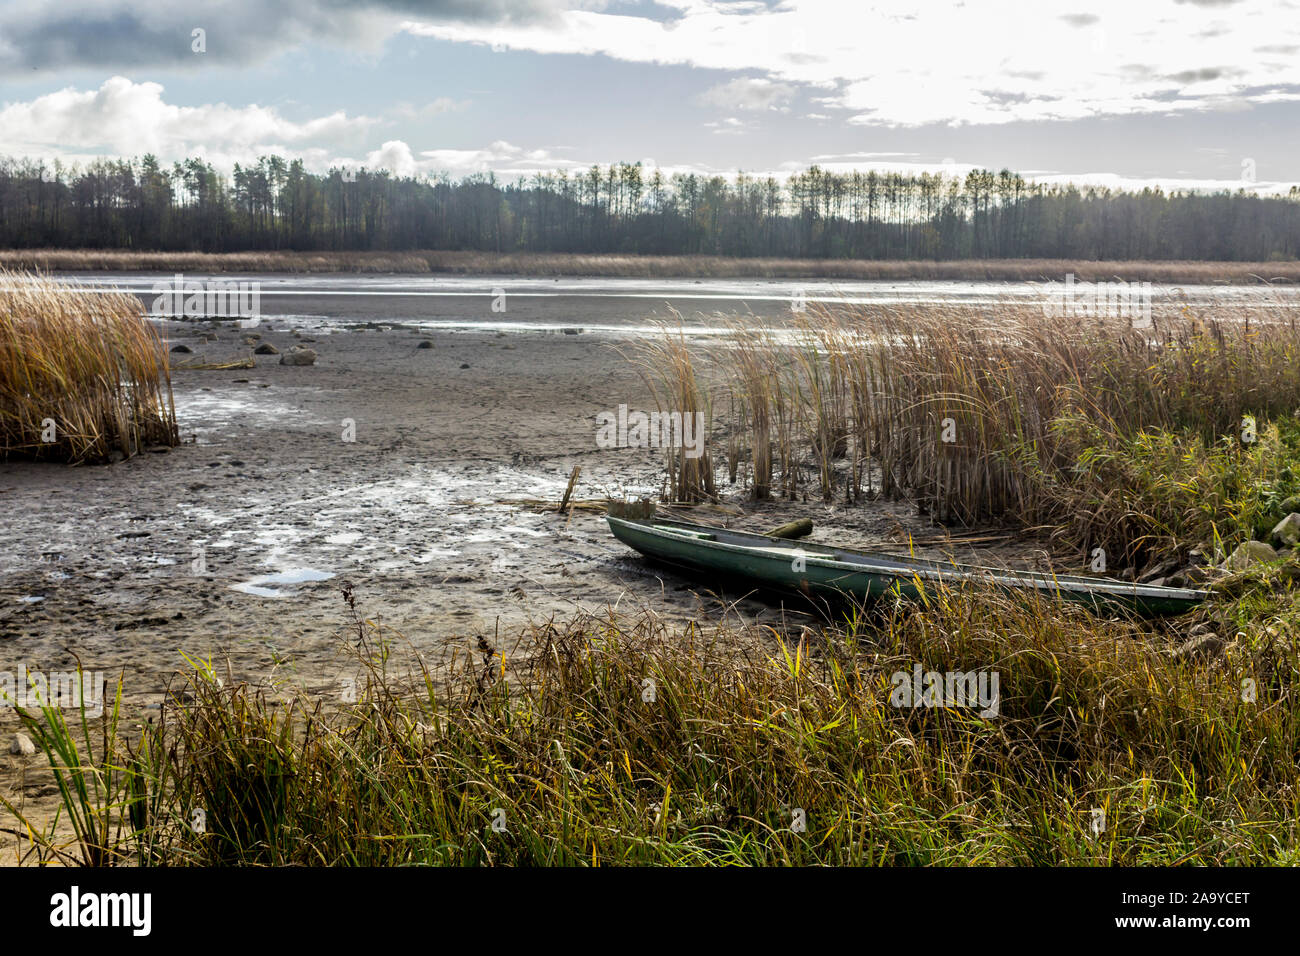 Ende Herbst. Teich für die Zucht von Fisch ohne Wasser. Ein Boot liegt an der Unterseite. Rohrkolben und Wald im Hintergrund. Fischerei. Podlasien, Polen. Stockfoto